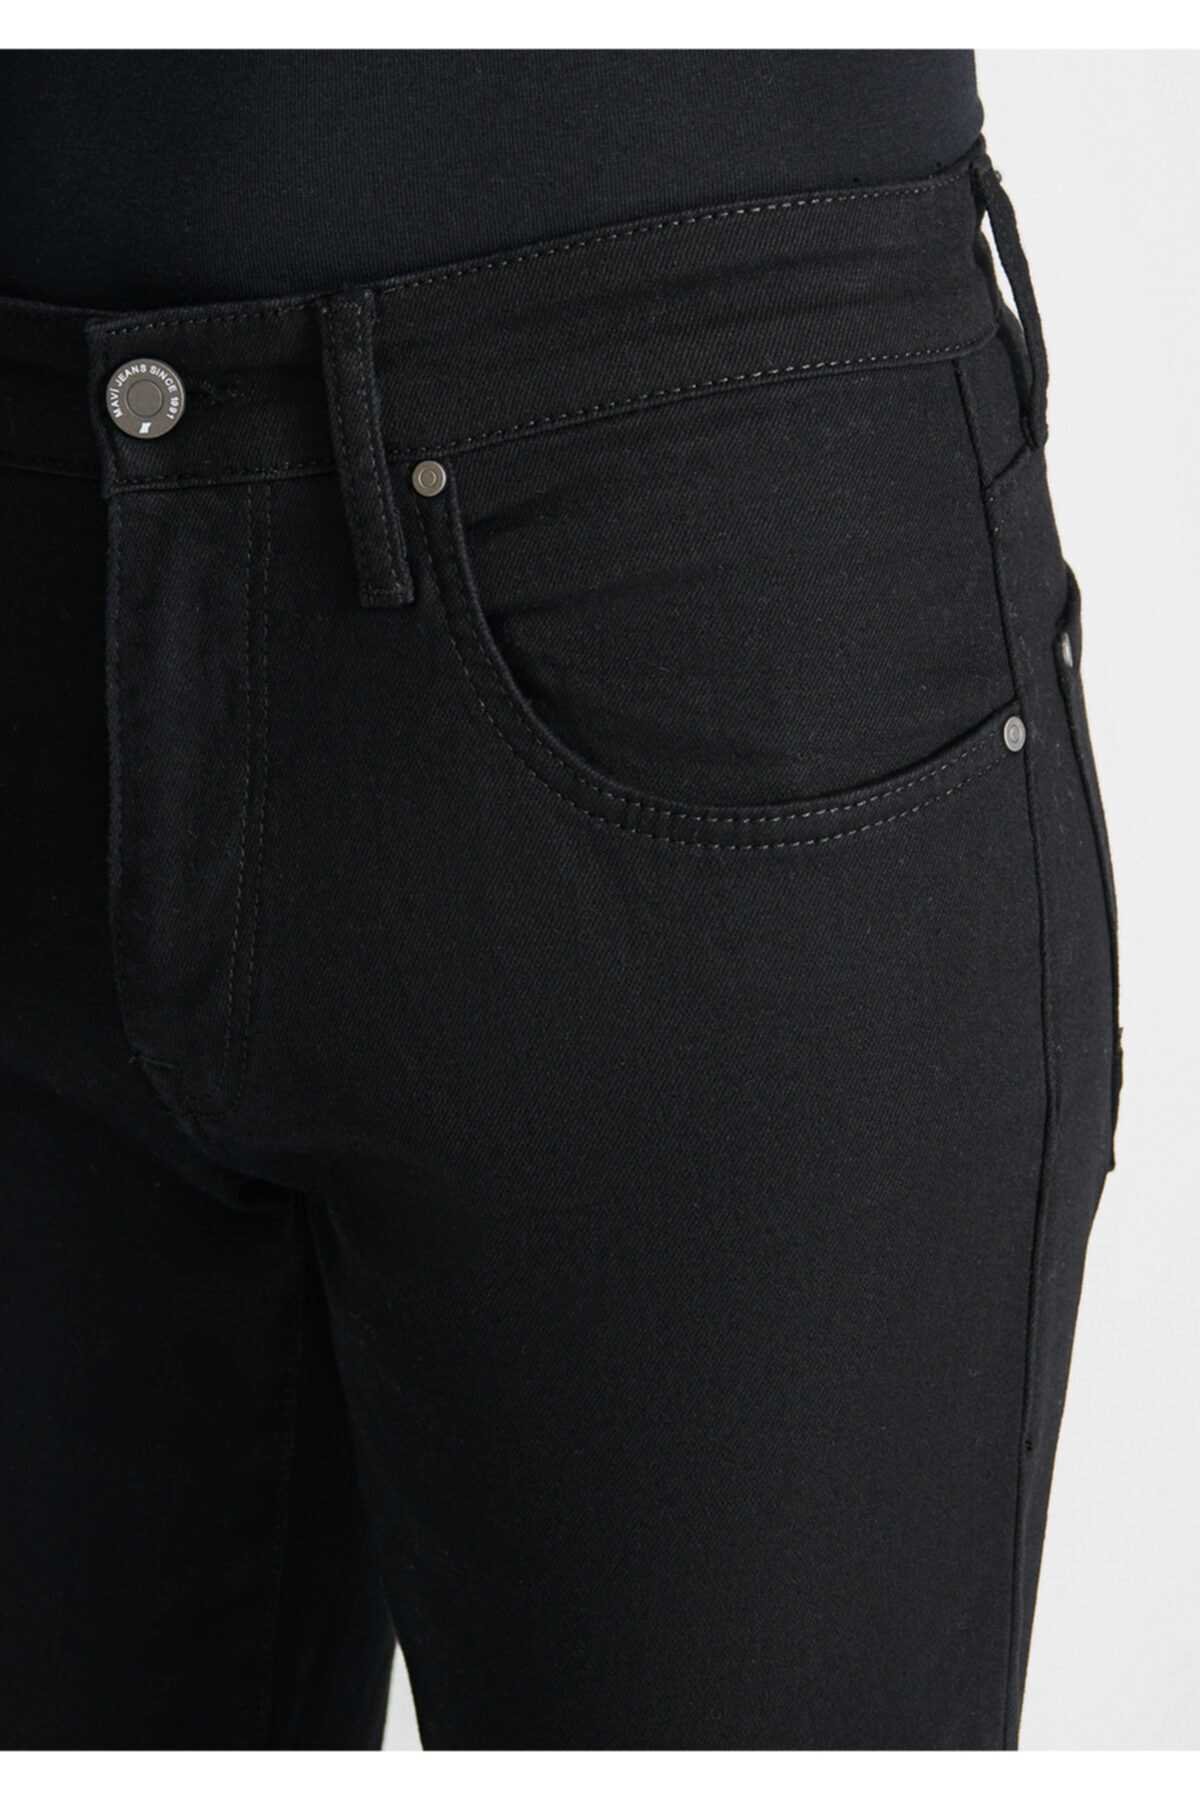 خرید پستی شلوار جین مردانه جدید شیک ماوی Siyah-35637 ty218412200